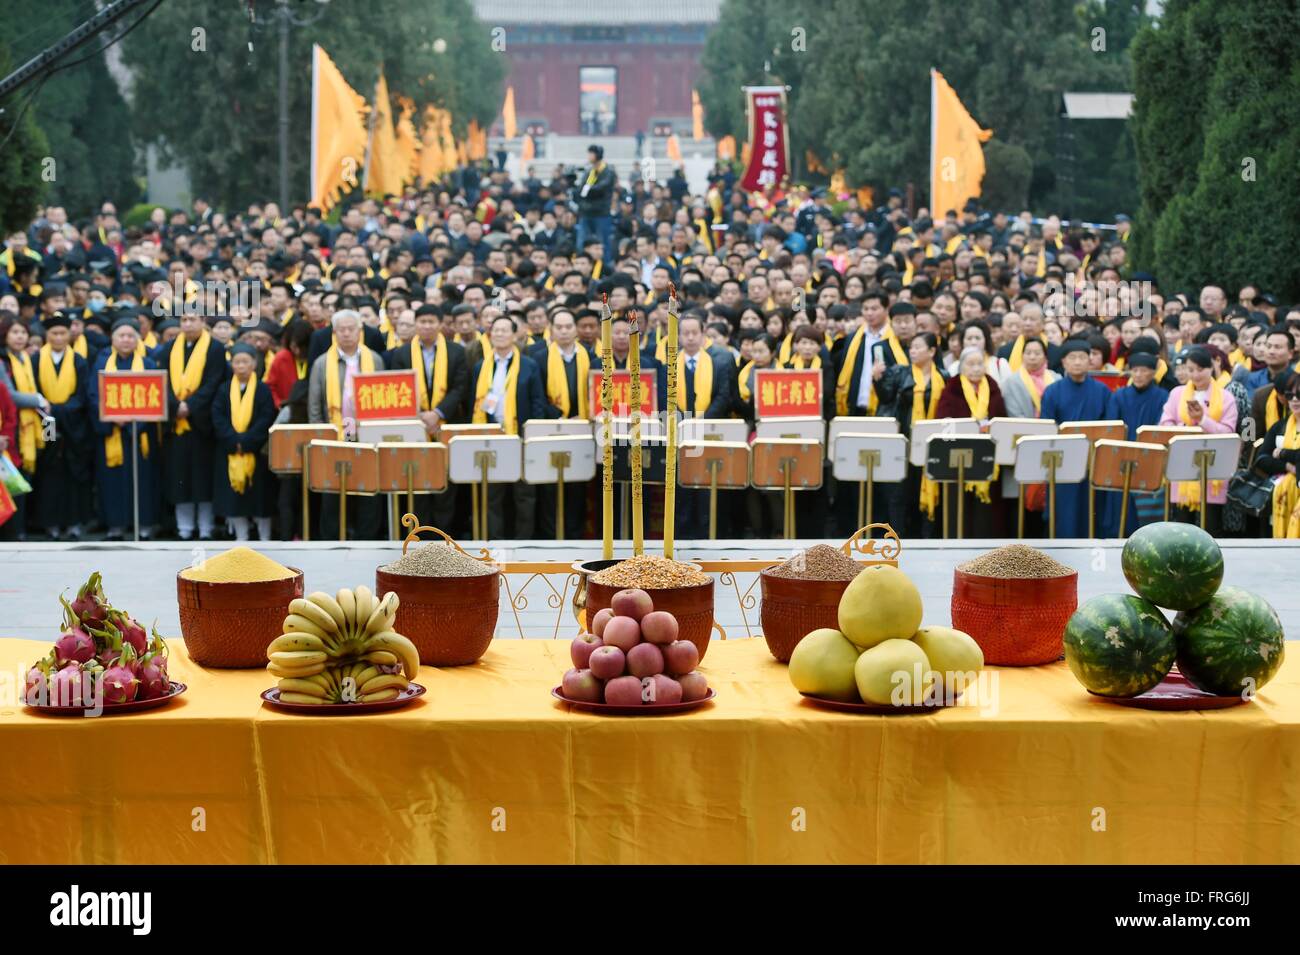 Luyi, province de Henan en Chine. Mar 23, 2016. Les gens adorent Laozi ou Lao-tseu (Lao-tse, 604-531 avant J.-C.) au cours d'une cérémonie commémorative pour Laozi 2,587ème anniversaire de naissance au Palais Taiqing dans Luyi comté, la province du Henan en Chine centrale, le 23 mars 2016. Laozi, mieux connu comme l'auteur du Tao Te Ching, est traditionnellement considéré comme le fondateur du Taoïsme. © Li Bo/Xinhua/Alamy Live News Banque D'Images